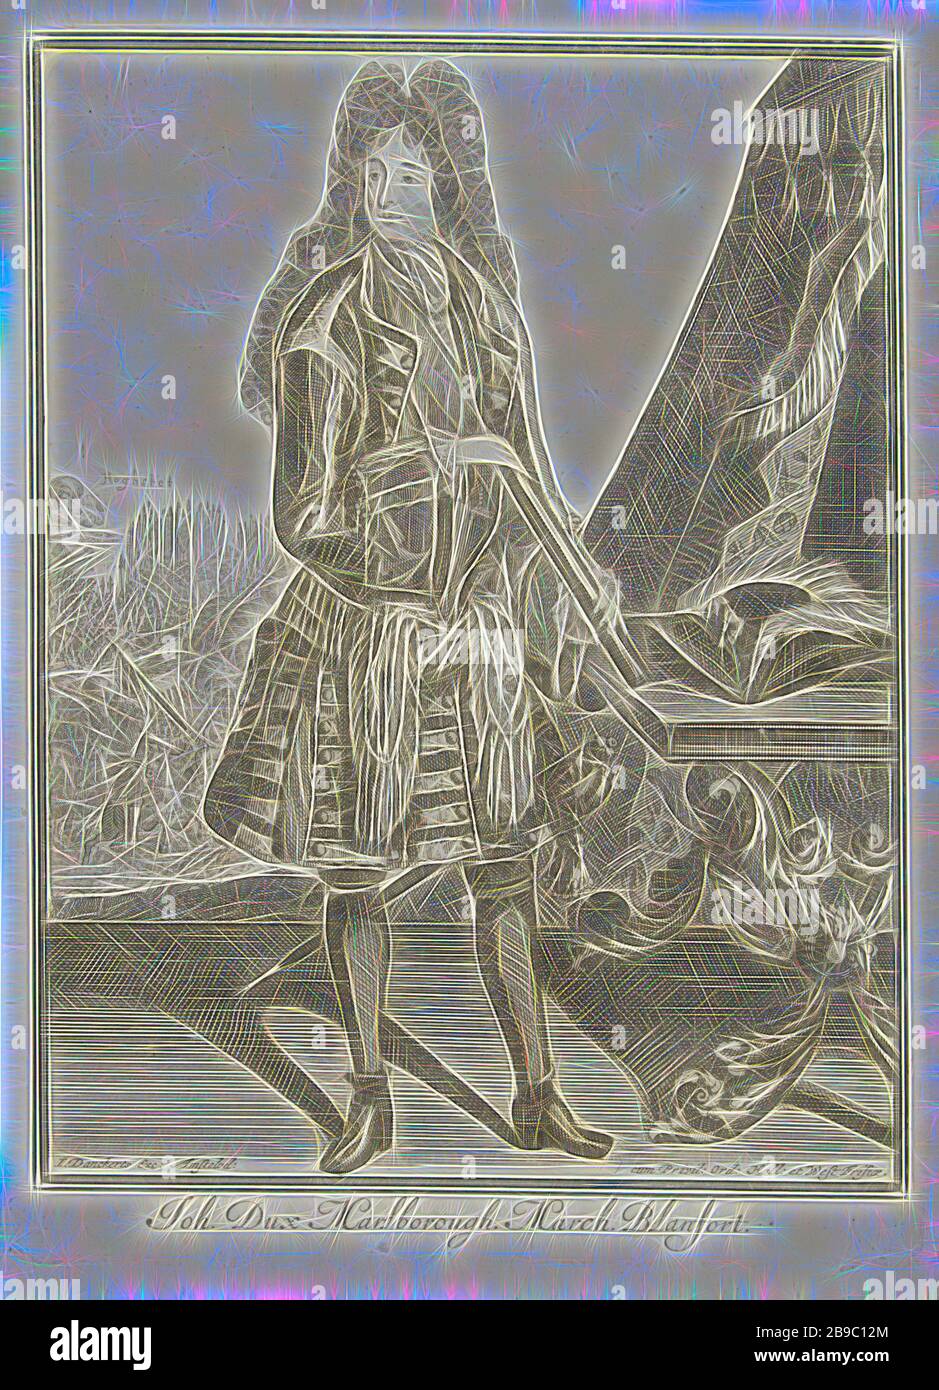 Retrato de John Churchill Marlborough Joh. Dux Marlborough. March Blanfort (título sobre objeto), Retrato del general John Churchill Marlborough, de pie en la mesa con una puntada. Detrás de él una tienda del ejército y batalla en Hochstädt en 1704, John Churchill (1er Duque de Marlborough), Justus Danckerts, Amsterdam, 1645 - 1701 y/o 1704 - 1722, papel, grabado, h 255 mm × w 189 mm, Reimaged by Gibon, diseño de brillo alegre cálido y radiante de rayos de luz. Arte clásico reinventado con un toque moderno. Fotografía inspirada en el futurismo, abrazando la energía dinámica de la tecnología moderna, m Foto de stock